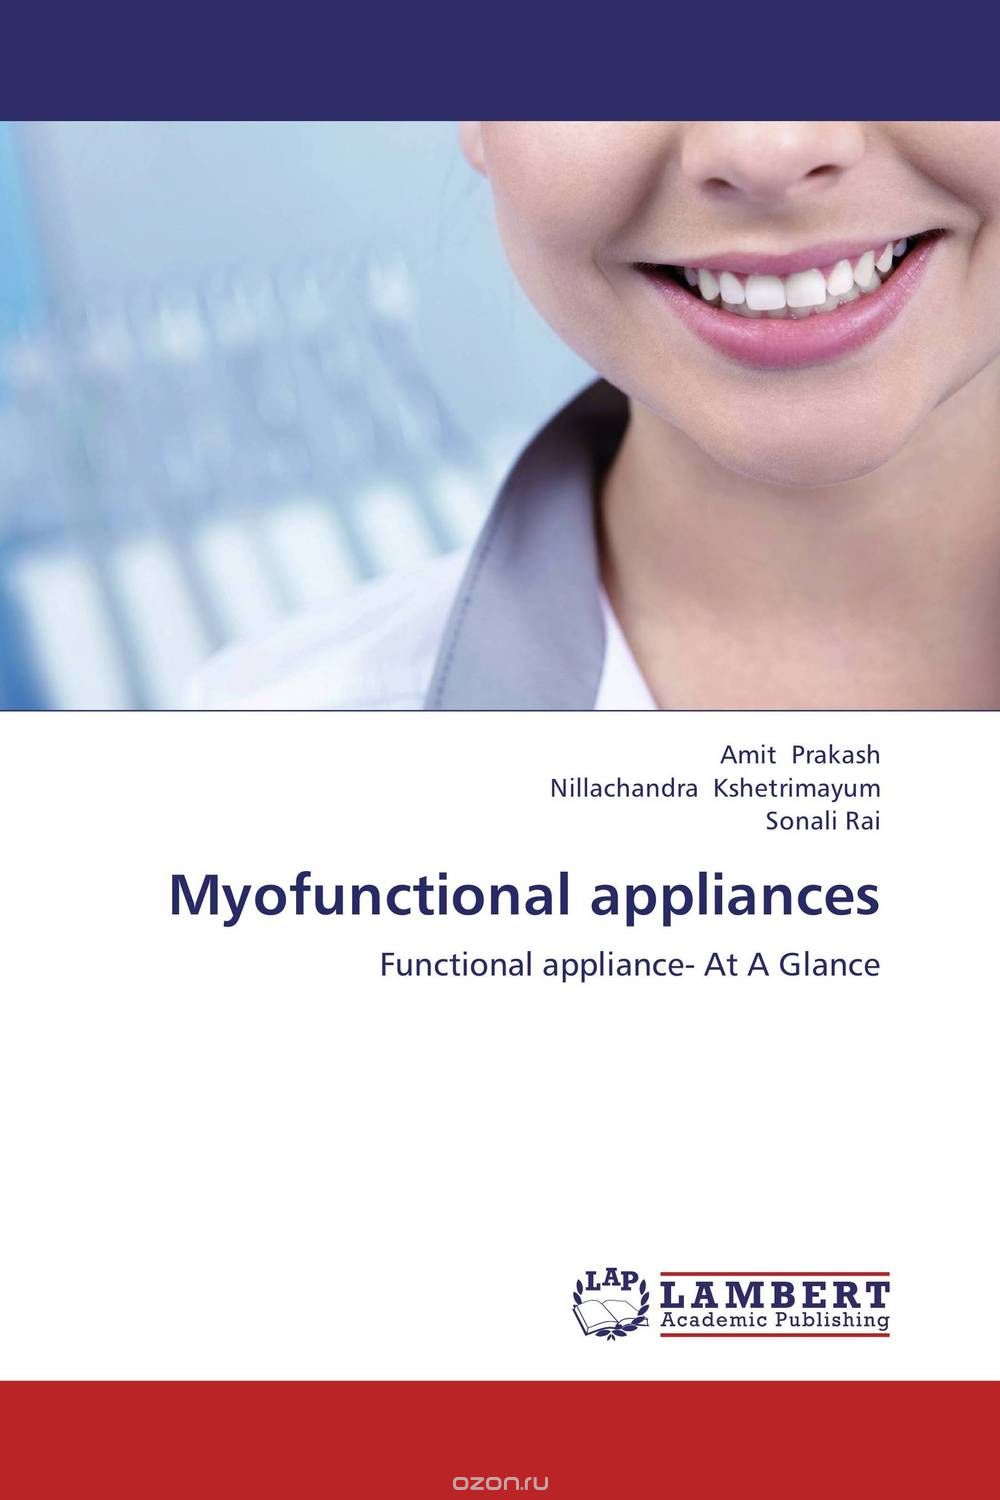 Скачать книгу "Myofunctional appliances"